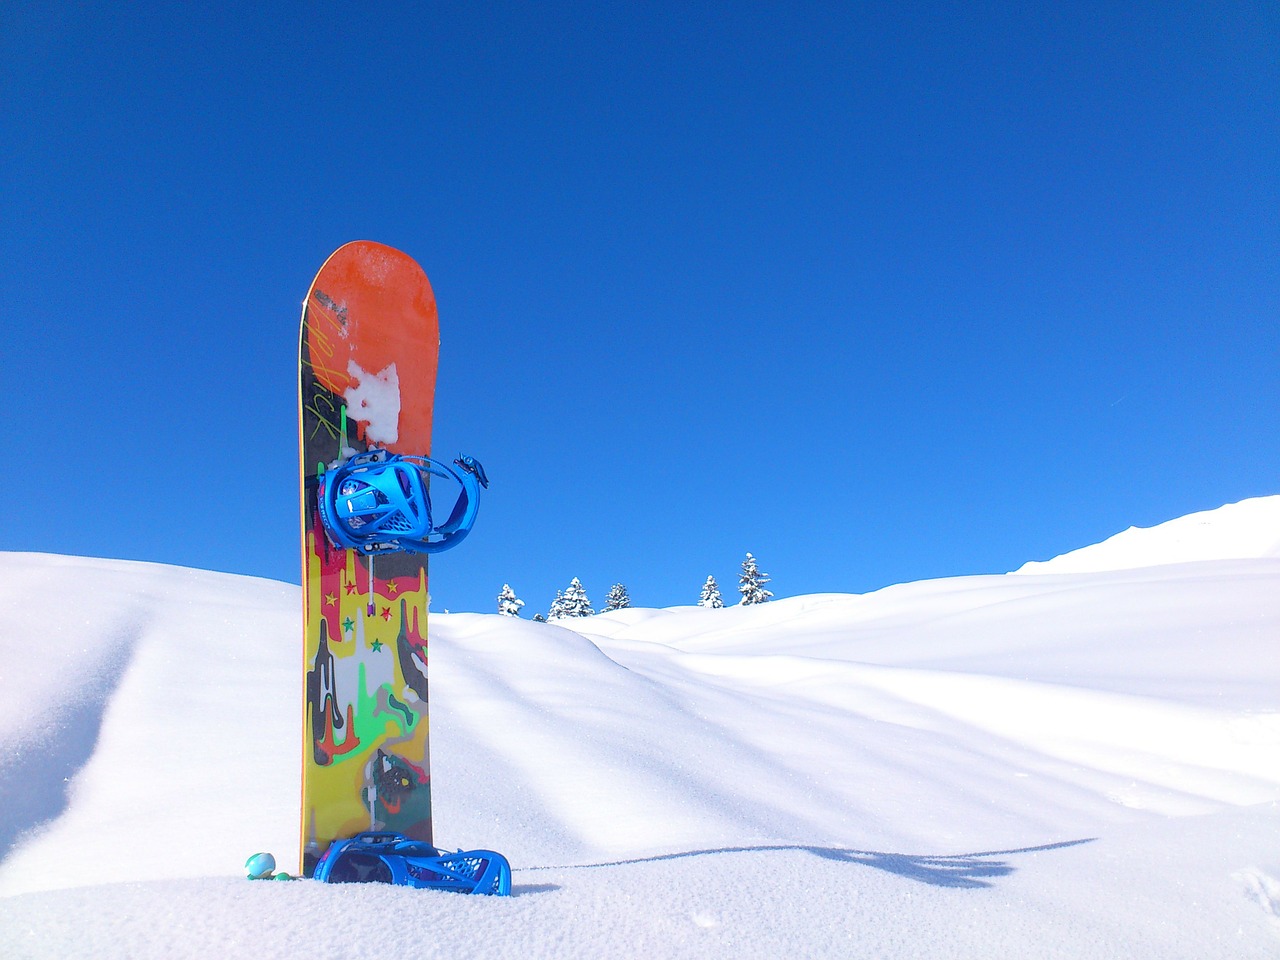 Choisir ses fixations pour un snowboard